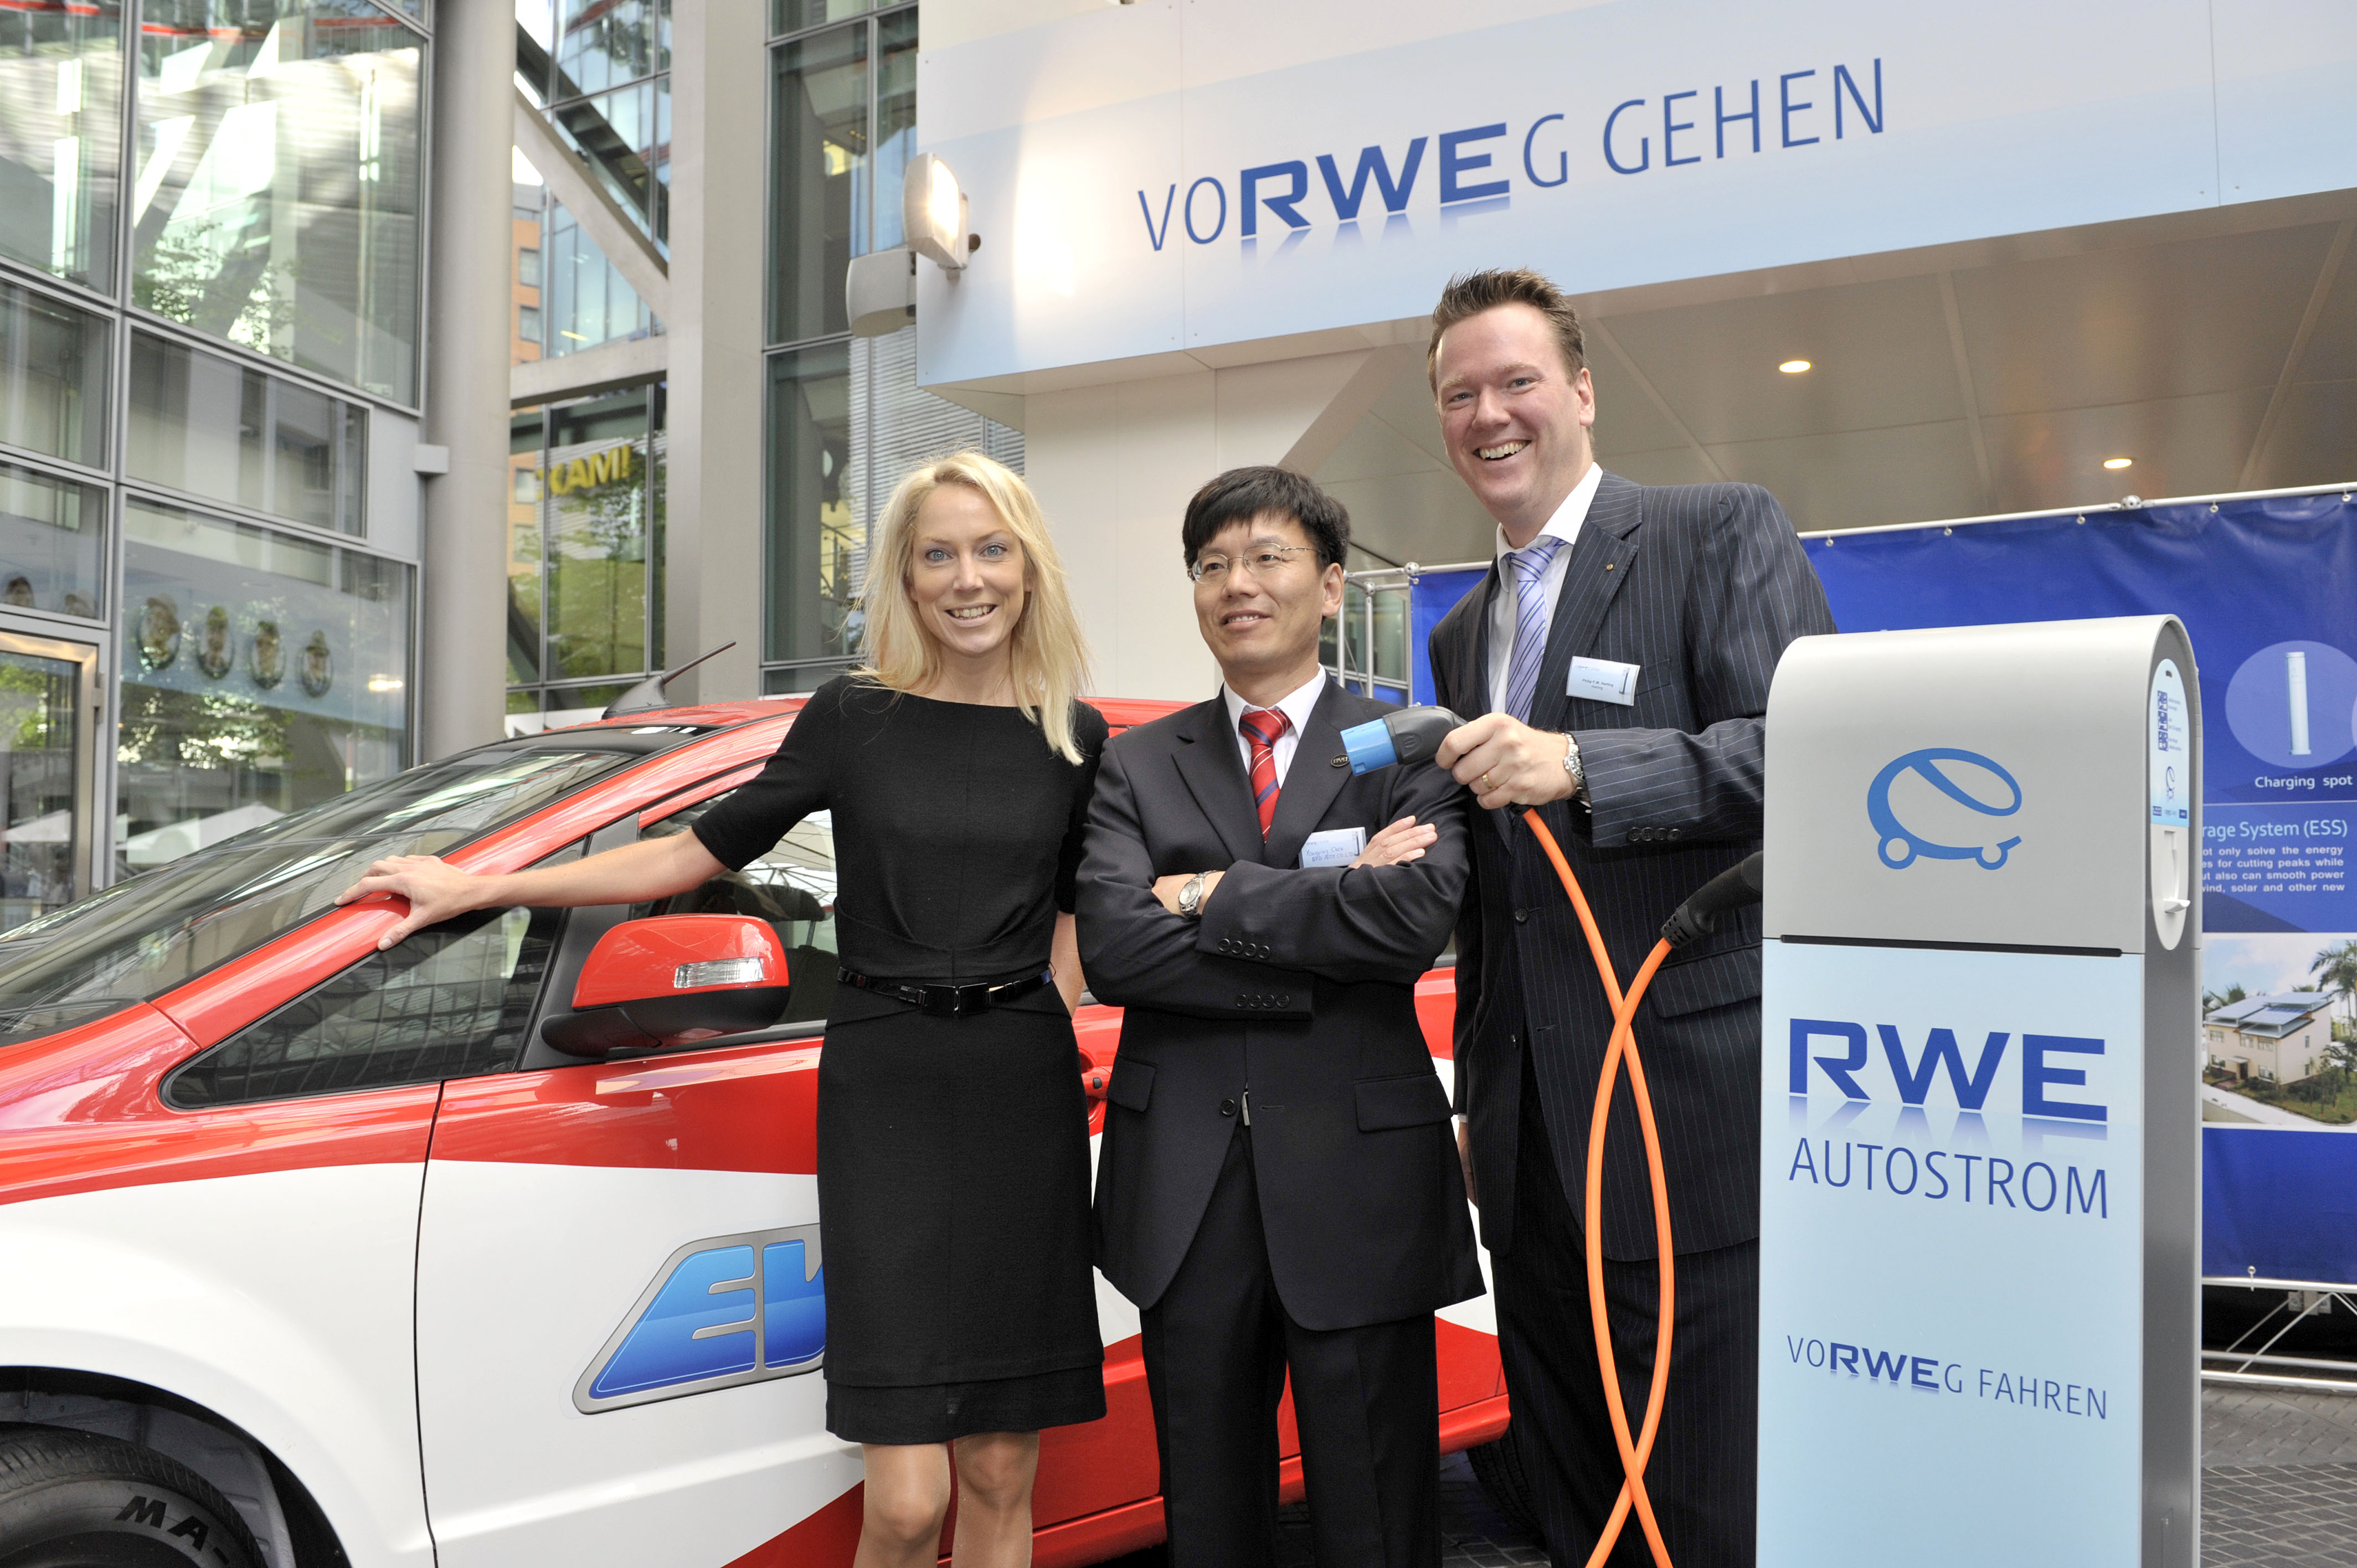 RWE bestückt Ladestationen jetzt mit E-Mobility-Standardstecker von Harting